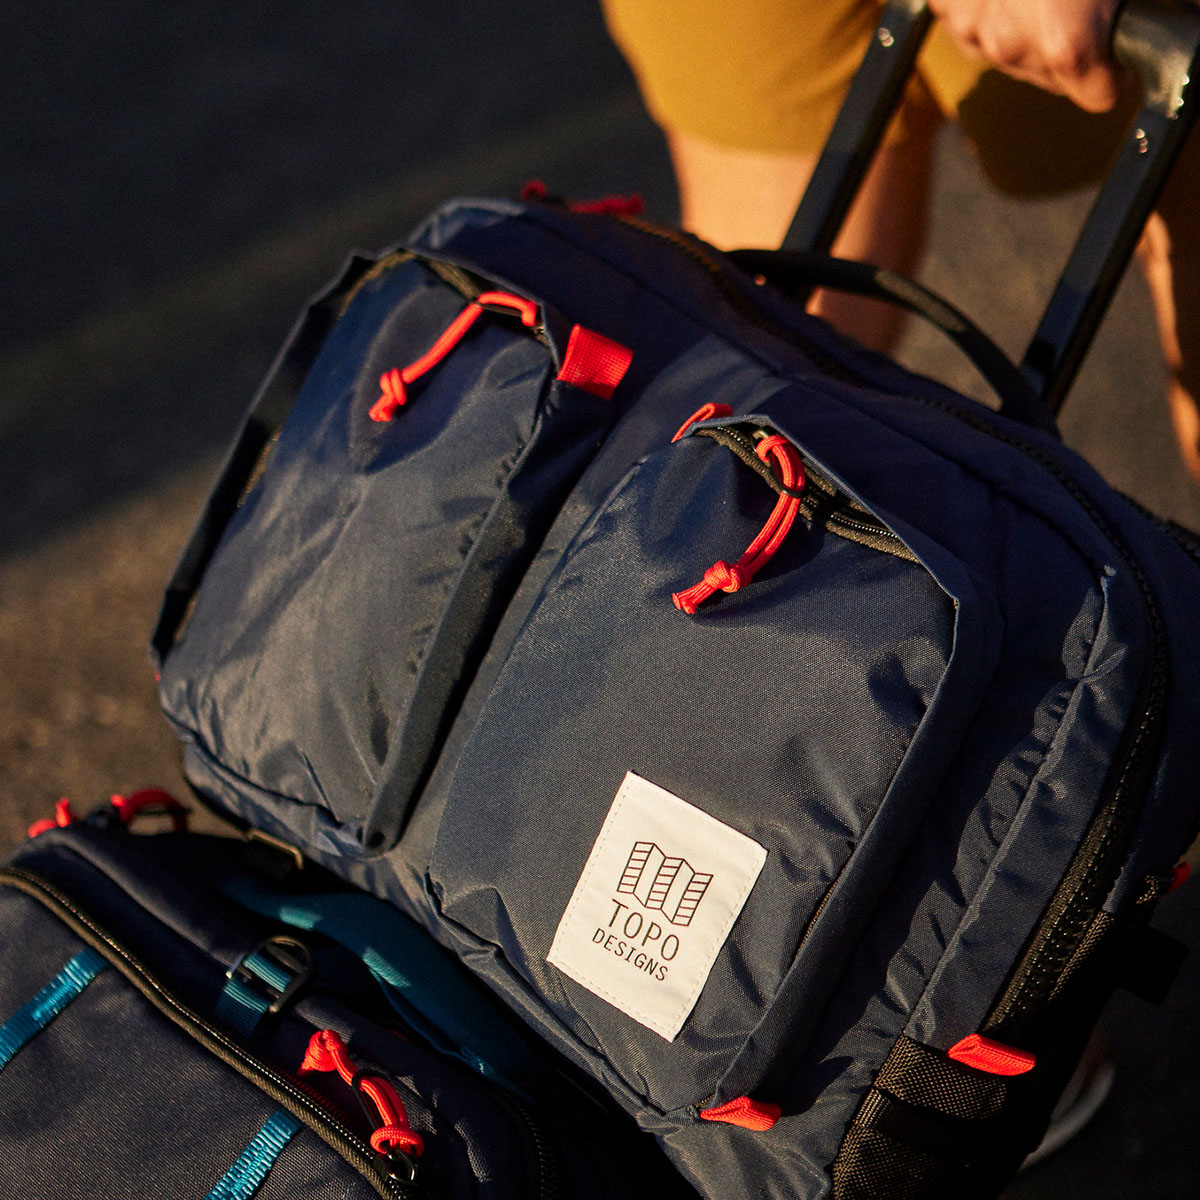 Global Travel Bag Roller